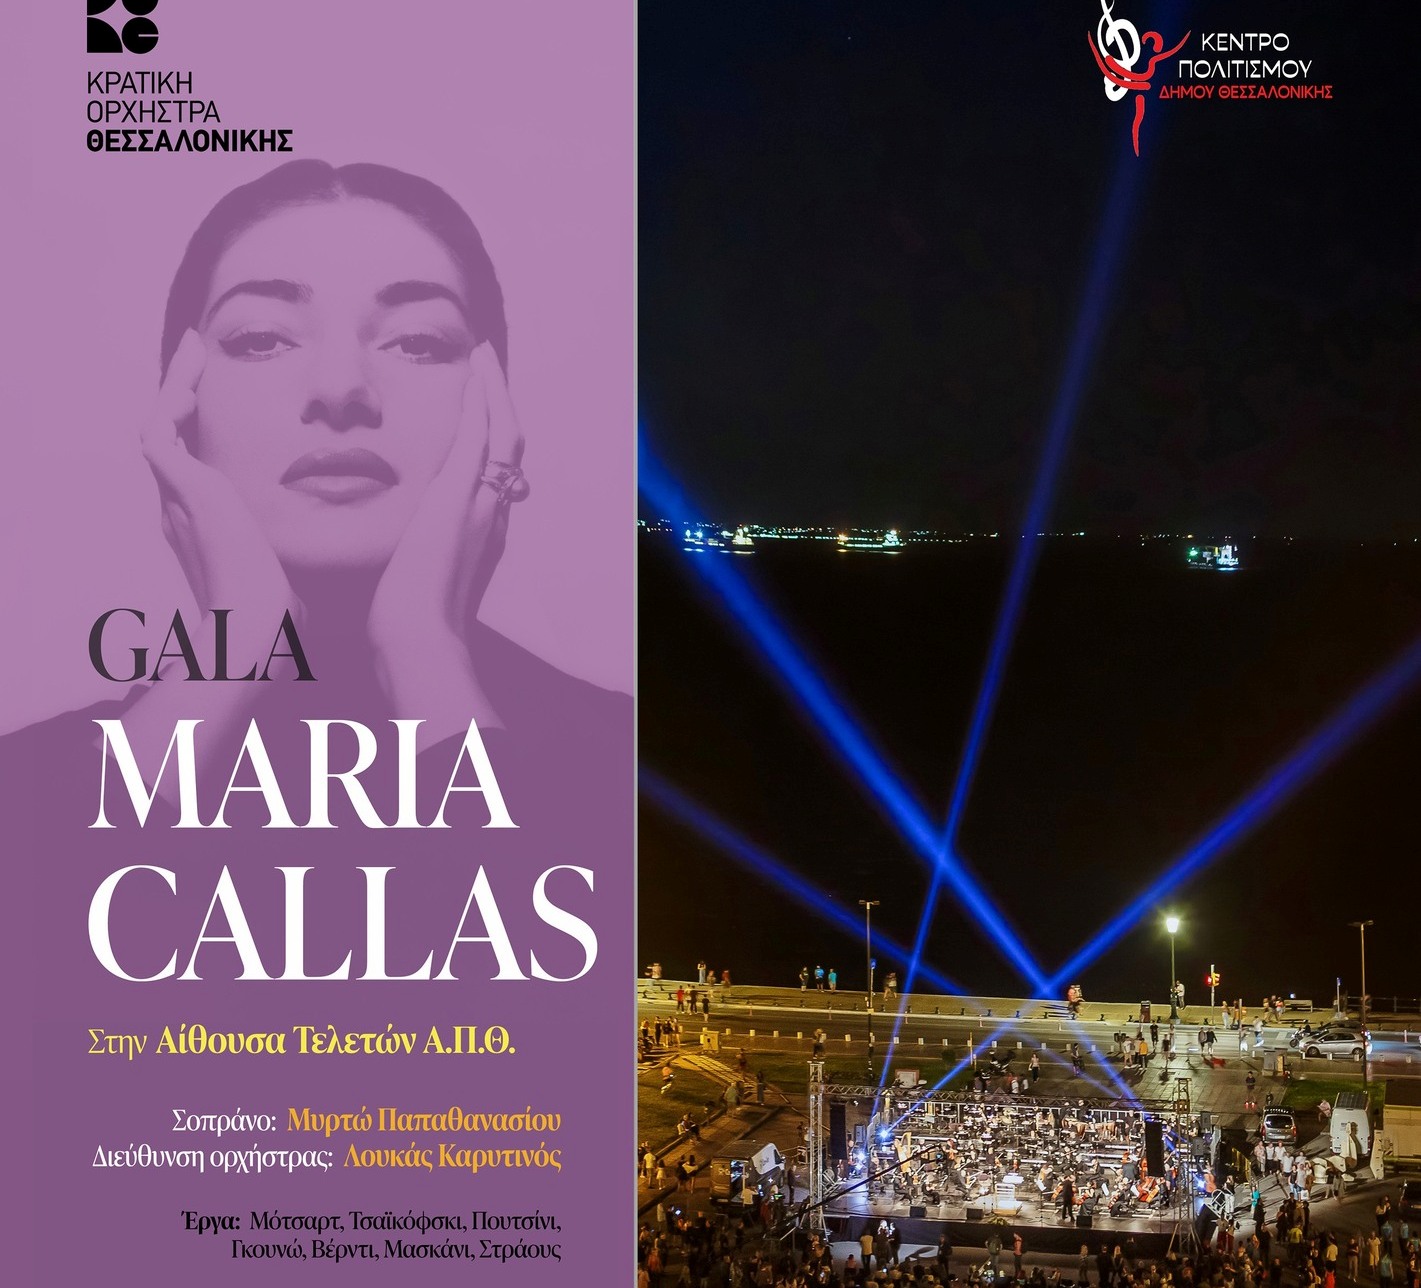 Θεσσαλονίκη: Στην Αίθουσα Τελετών του Α.Π.Θ.-λόγω καιρού-το γκαλά όπερας«100 χρόνια Μαρία Κάλλας»